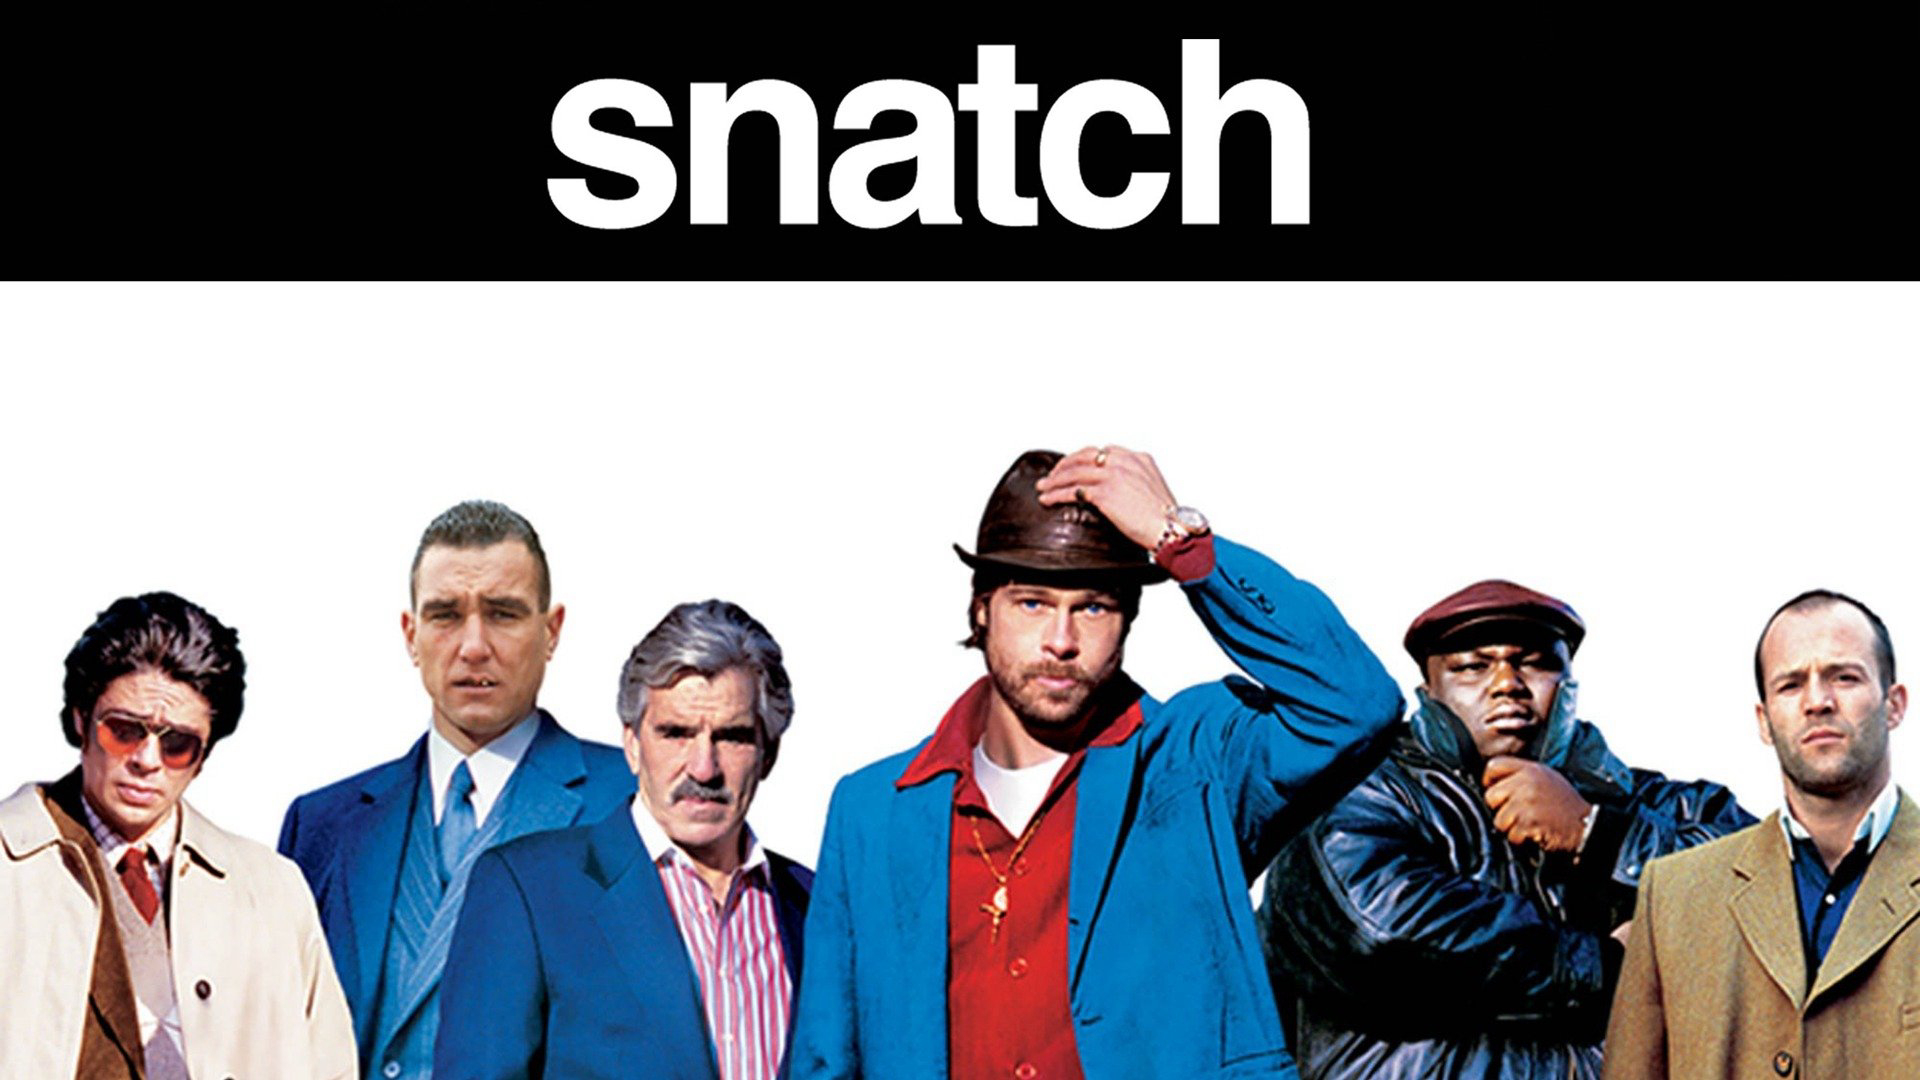 Snatch / Snatch (2000)